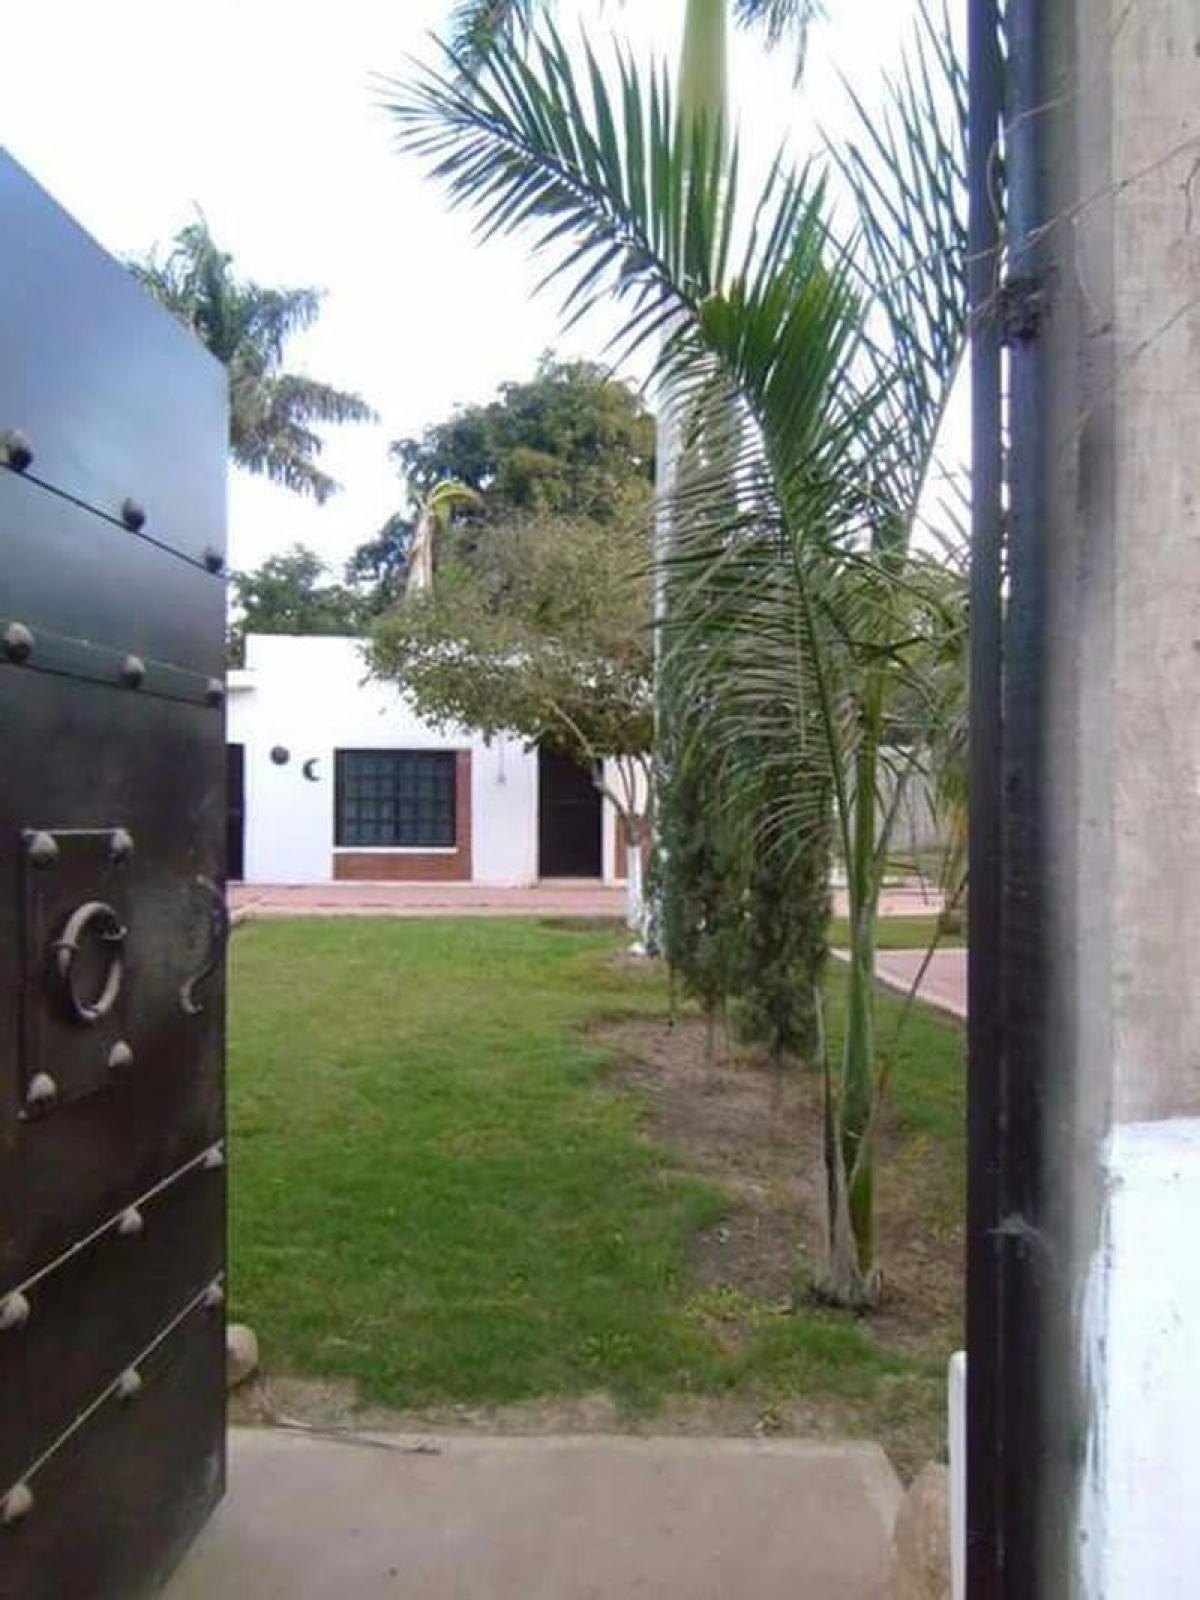 Picture of Development Site For Sale in Navolato, Sinaloa, Mexico